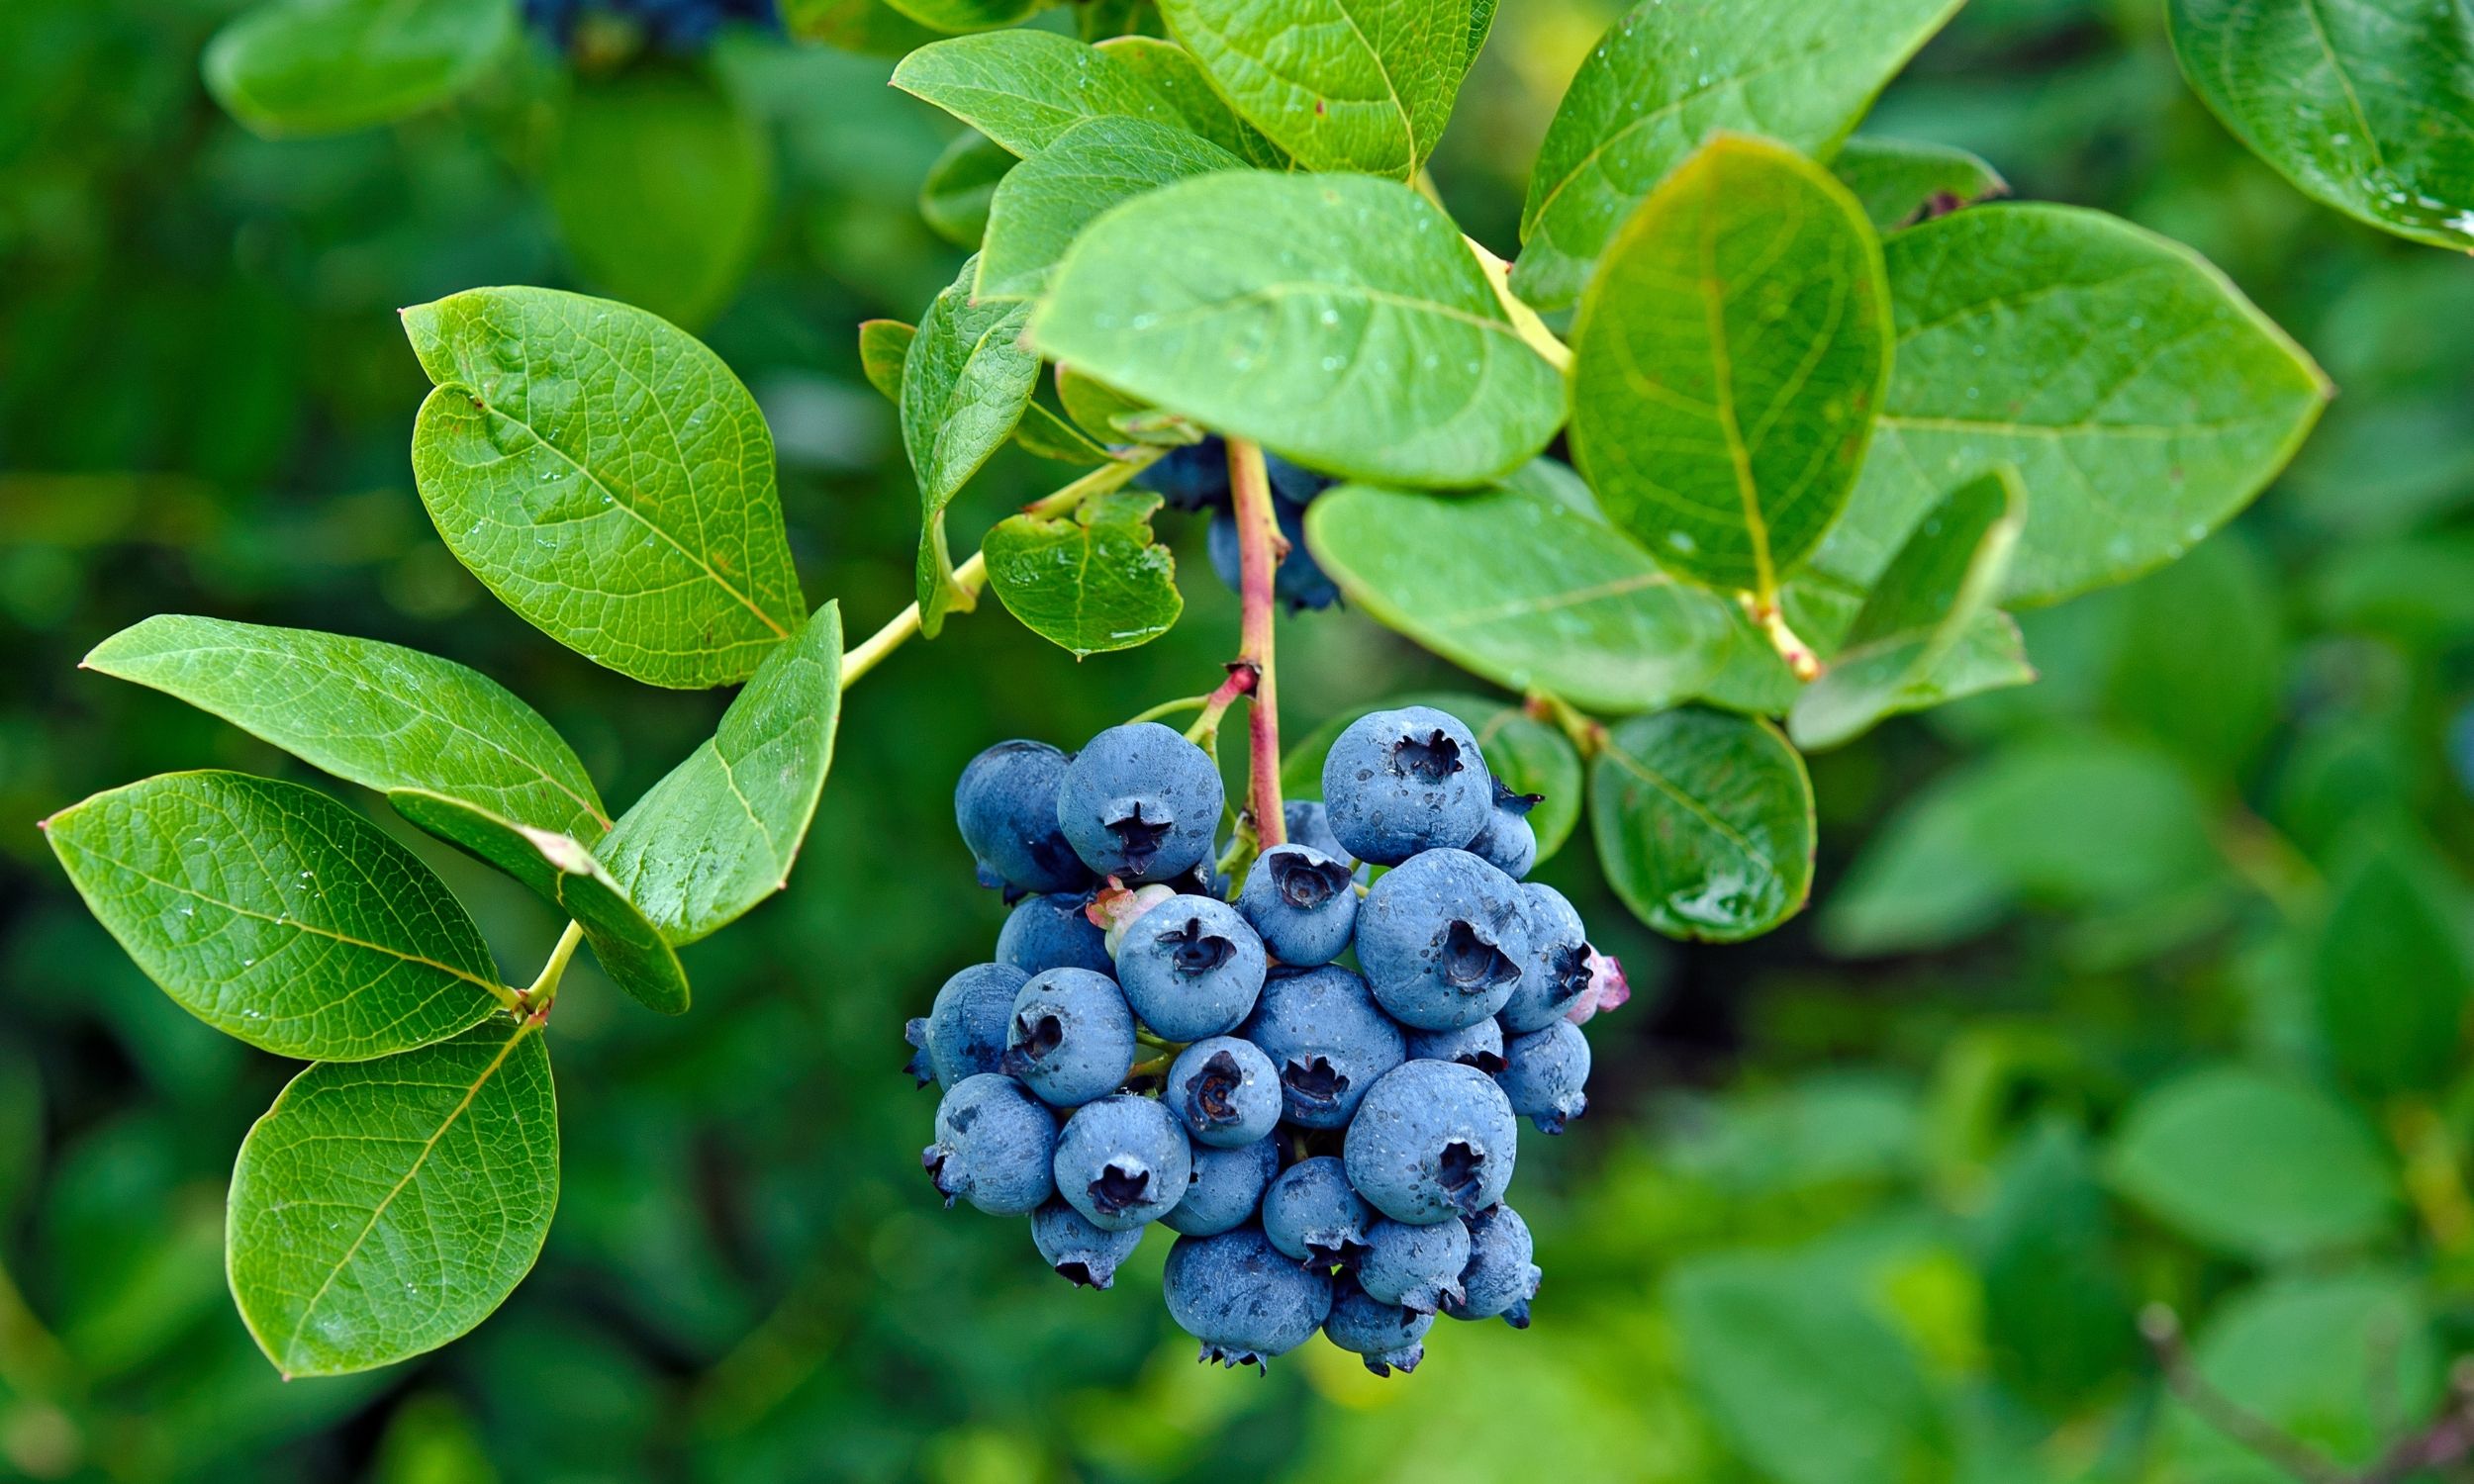 blueberry bush in pots